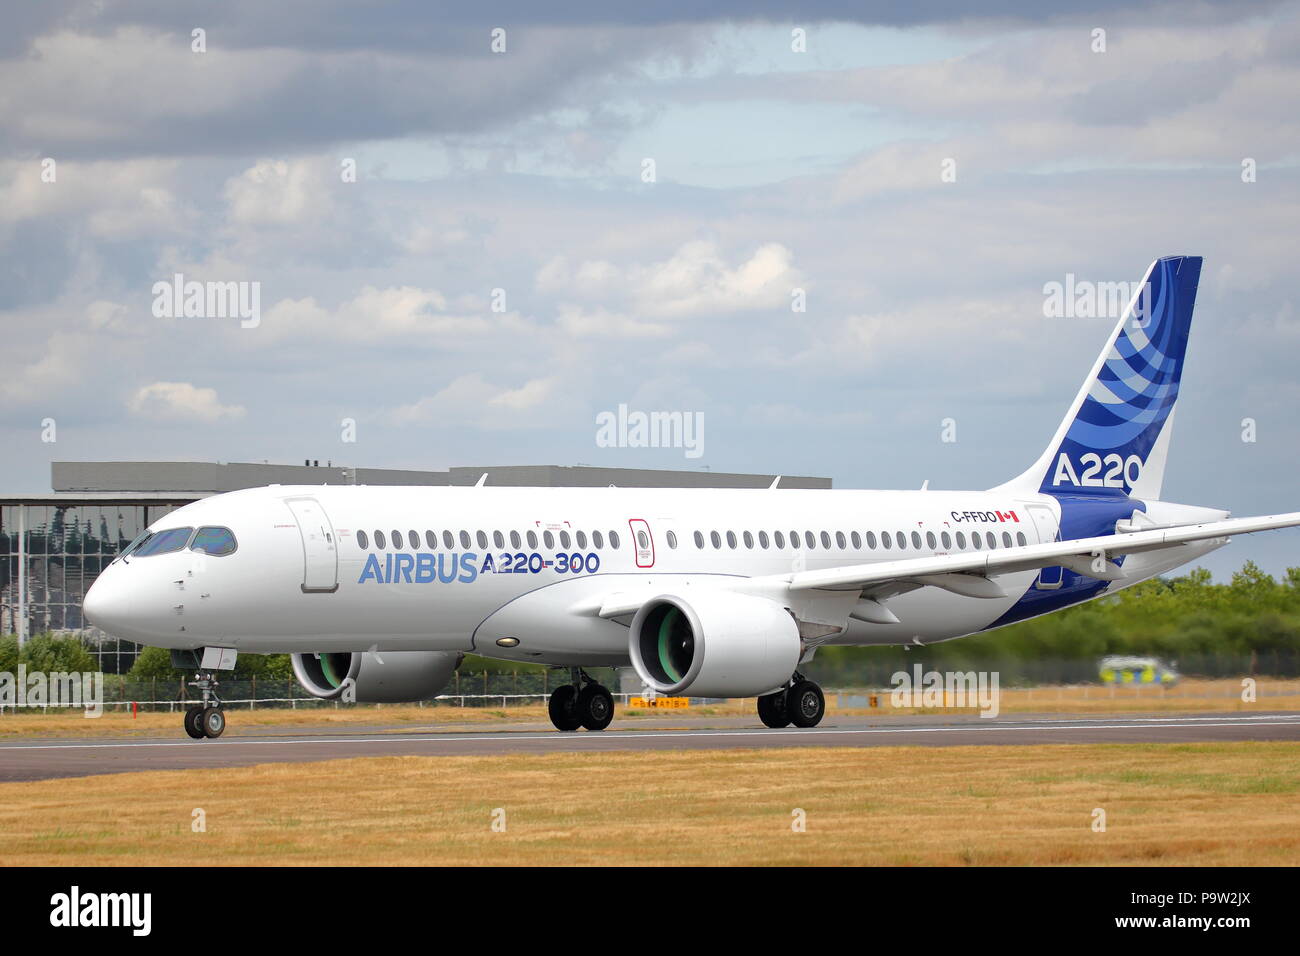 L'Airbus A220-300, le dernier né de la famille Airbus, a montré son agilité et maniabilité au Farnborough International Airshow 2018 Banque D'Images